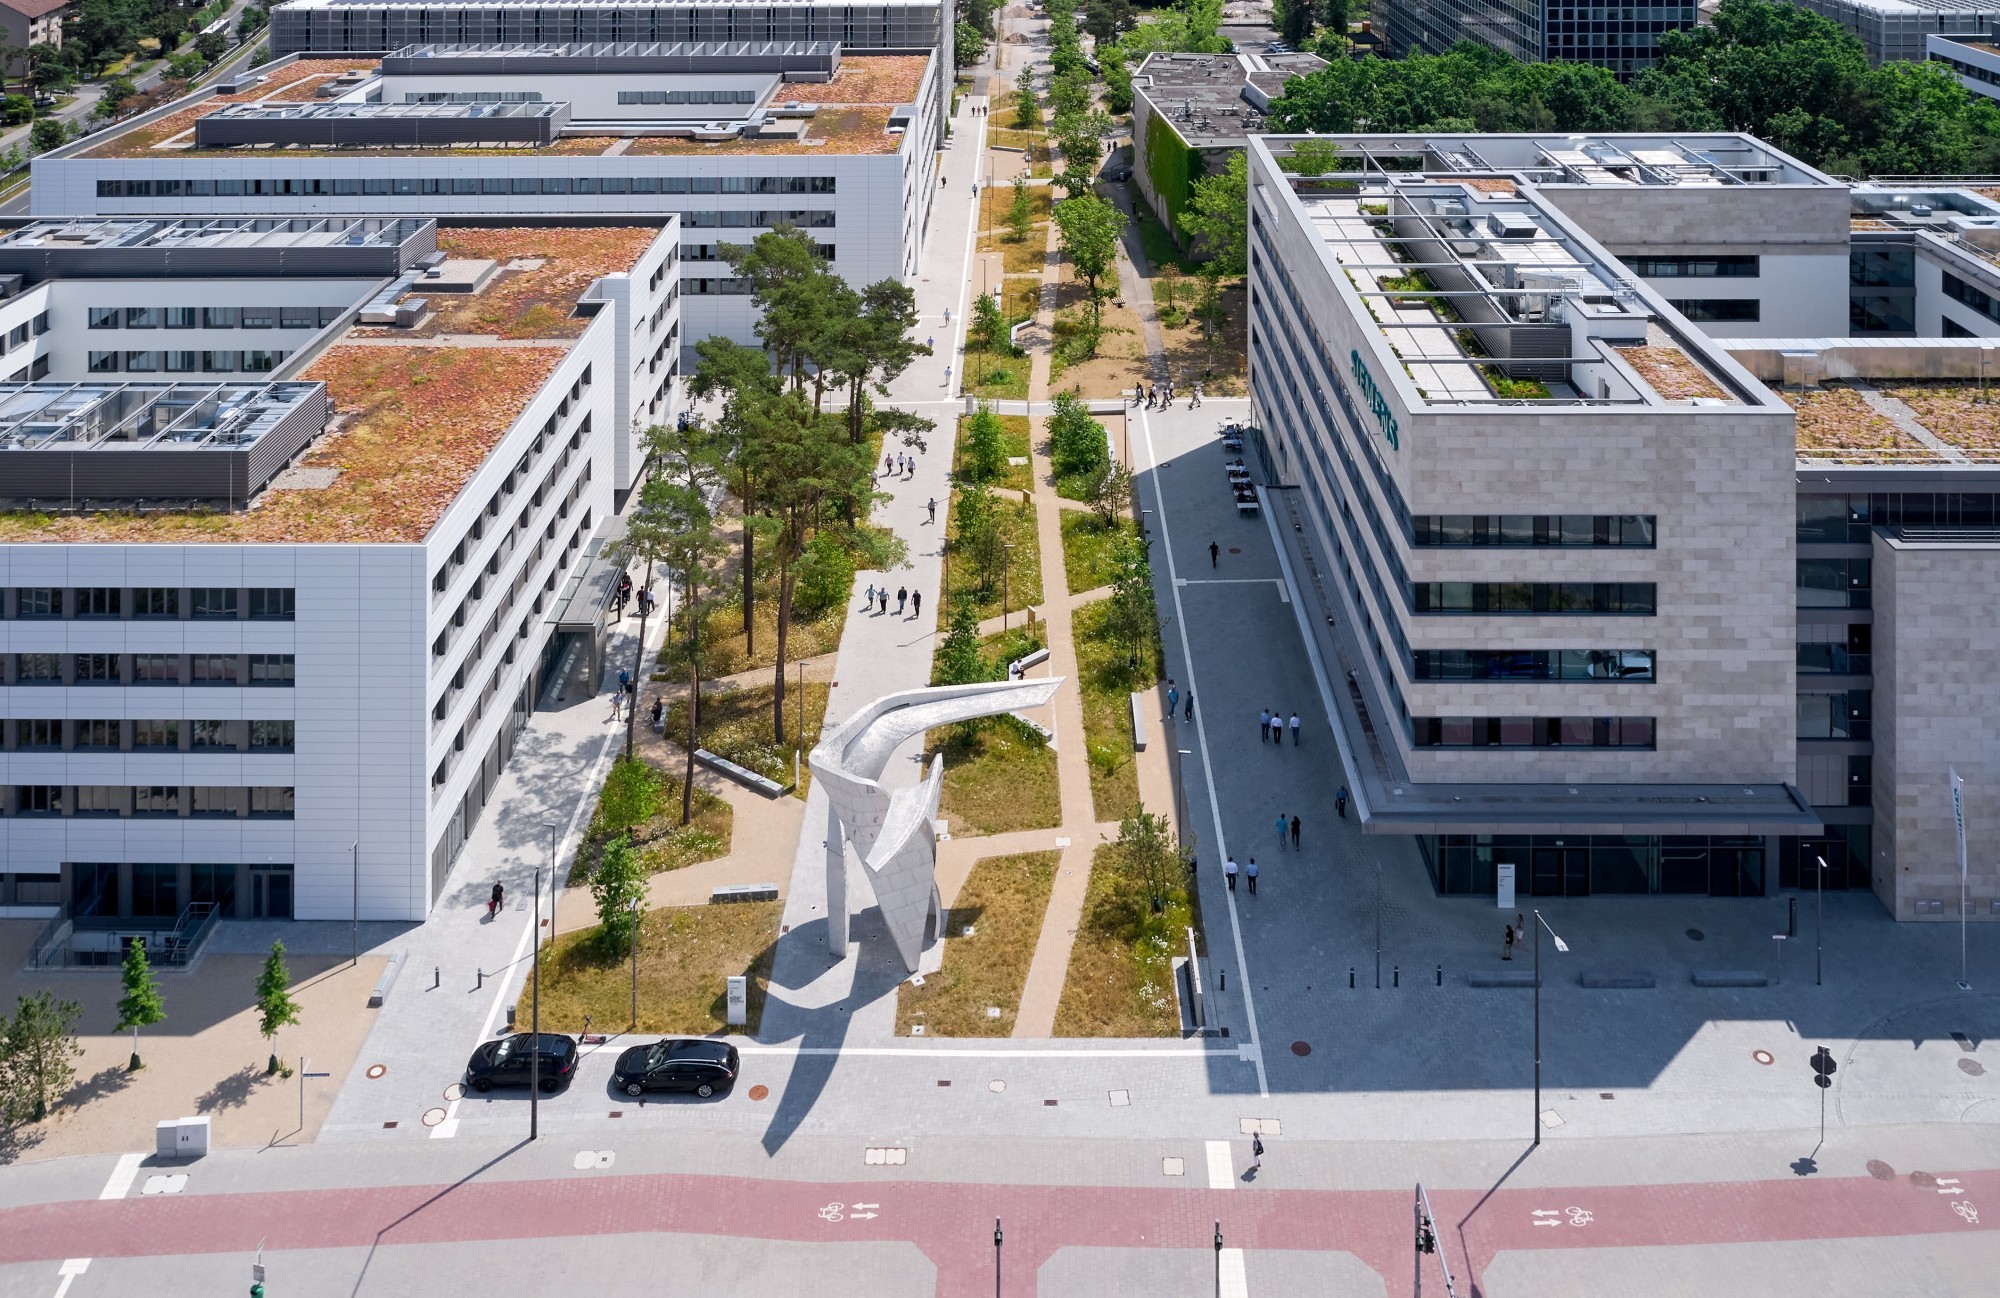 Le quartier innovant Siemens Campus à Erlangen, issu du portefeuille de projets du « grauegrau ».